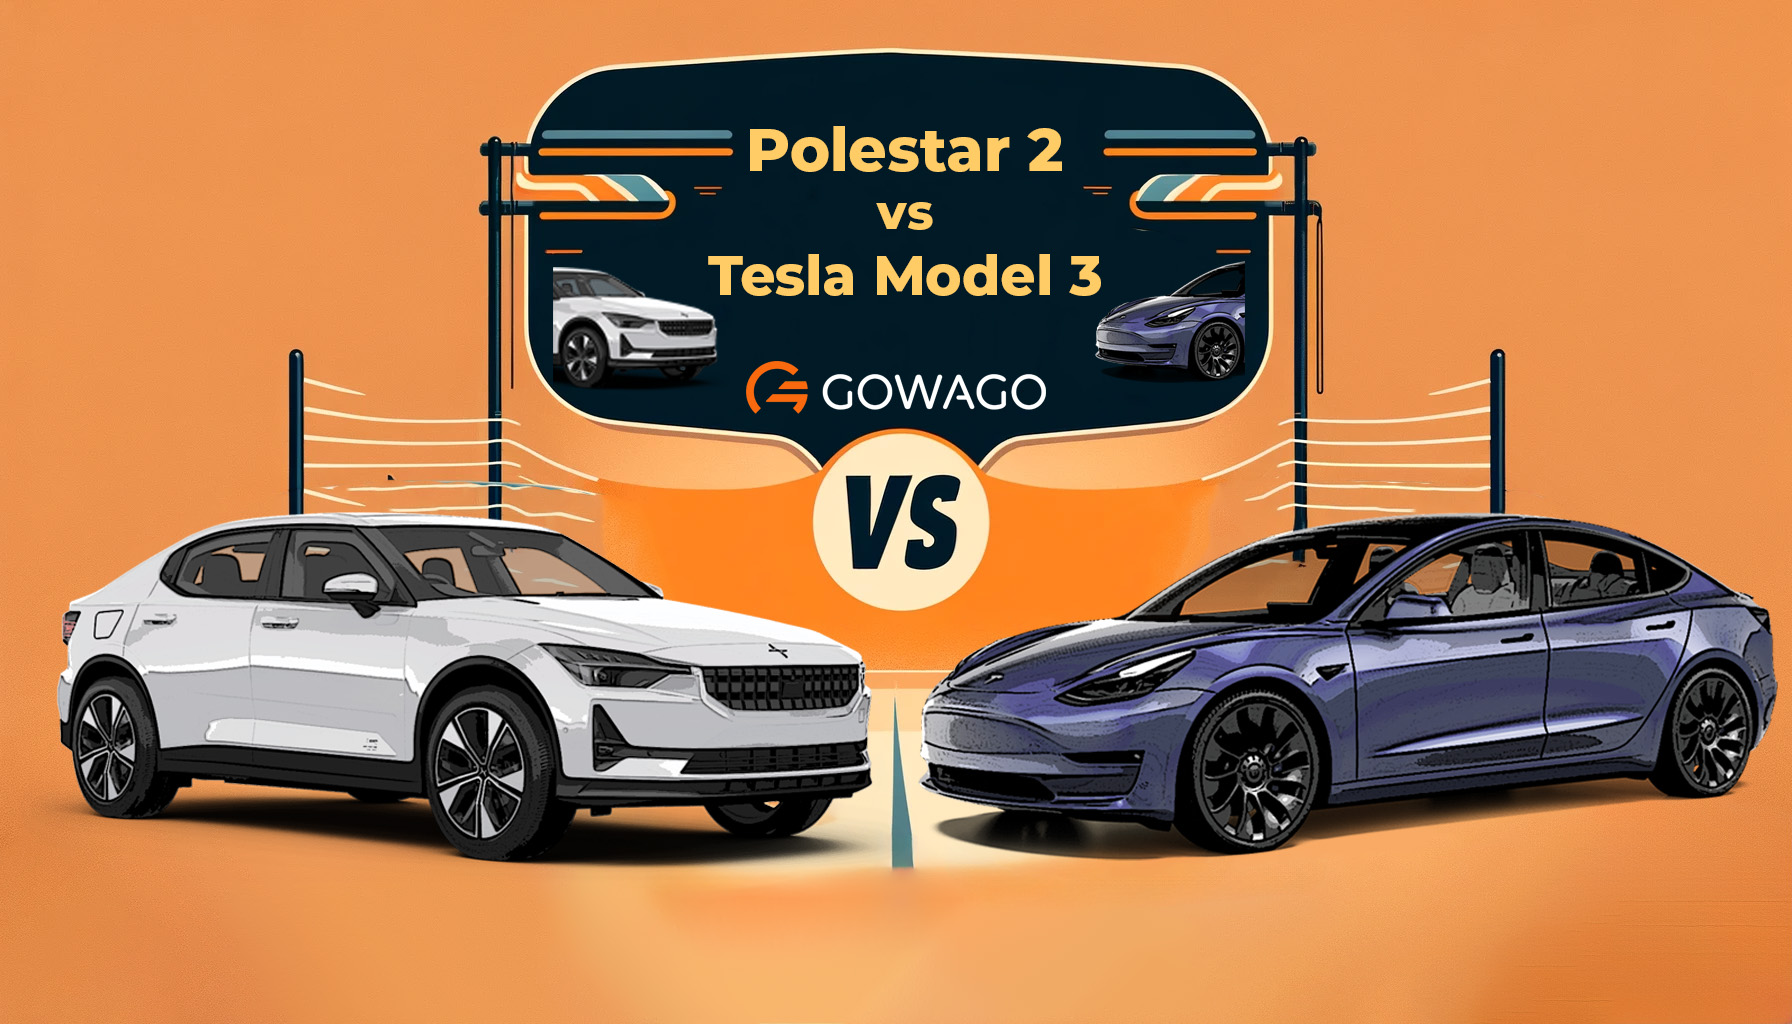 Polestar 2 vs Tesla Model 3